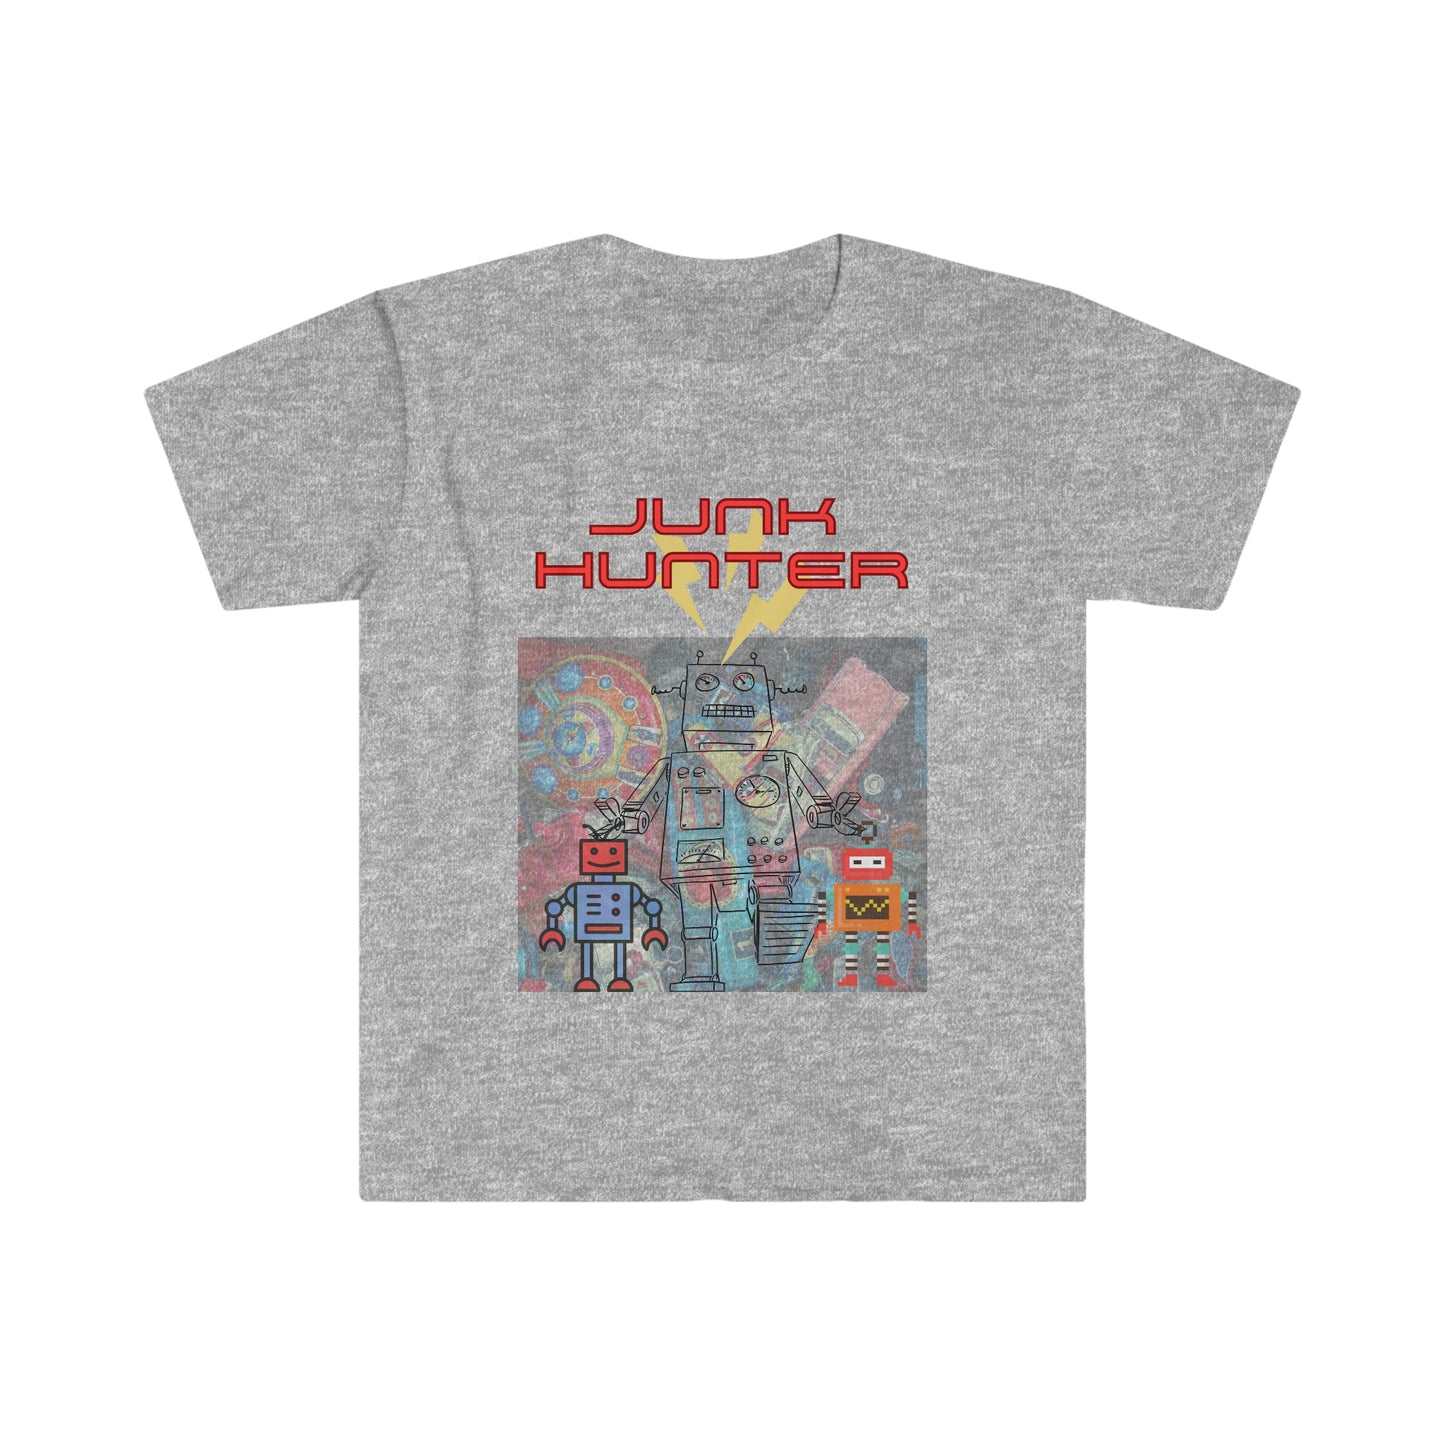 Junk Hunter - Adult Size Tee - Robot Shirt- Unisex Softstyle T-Shirt